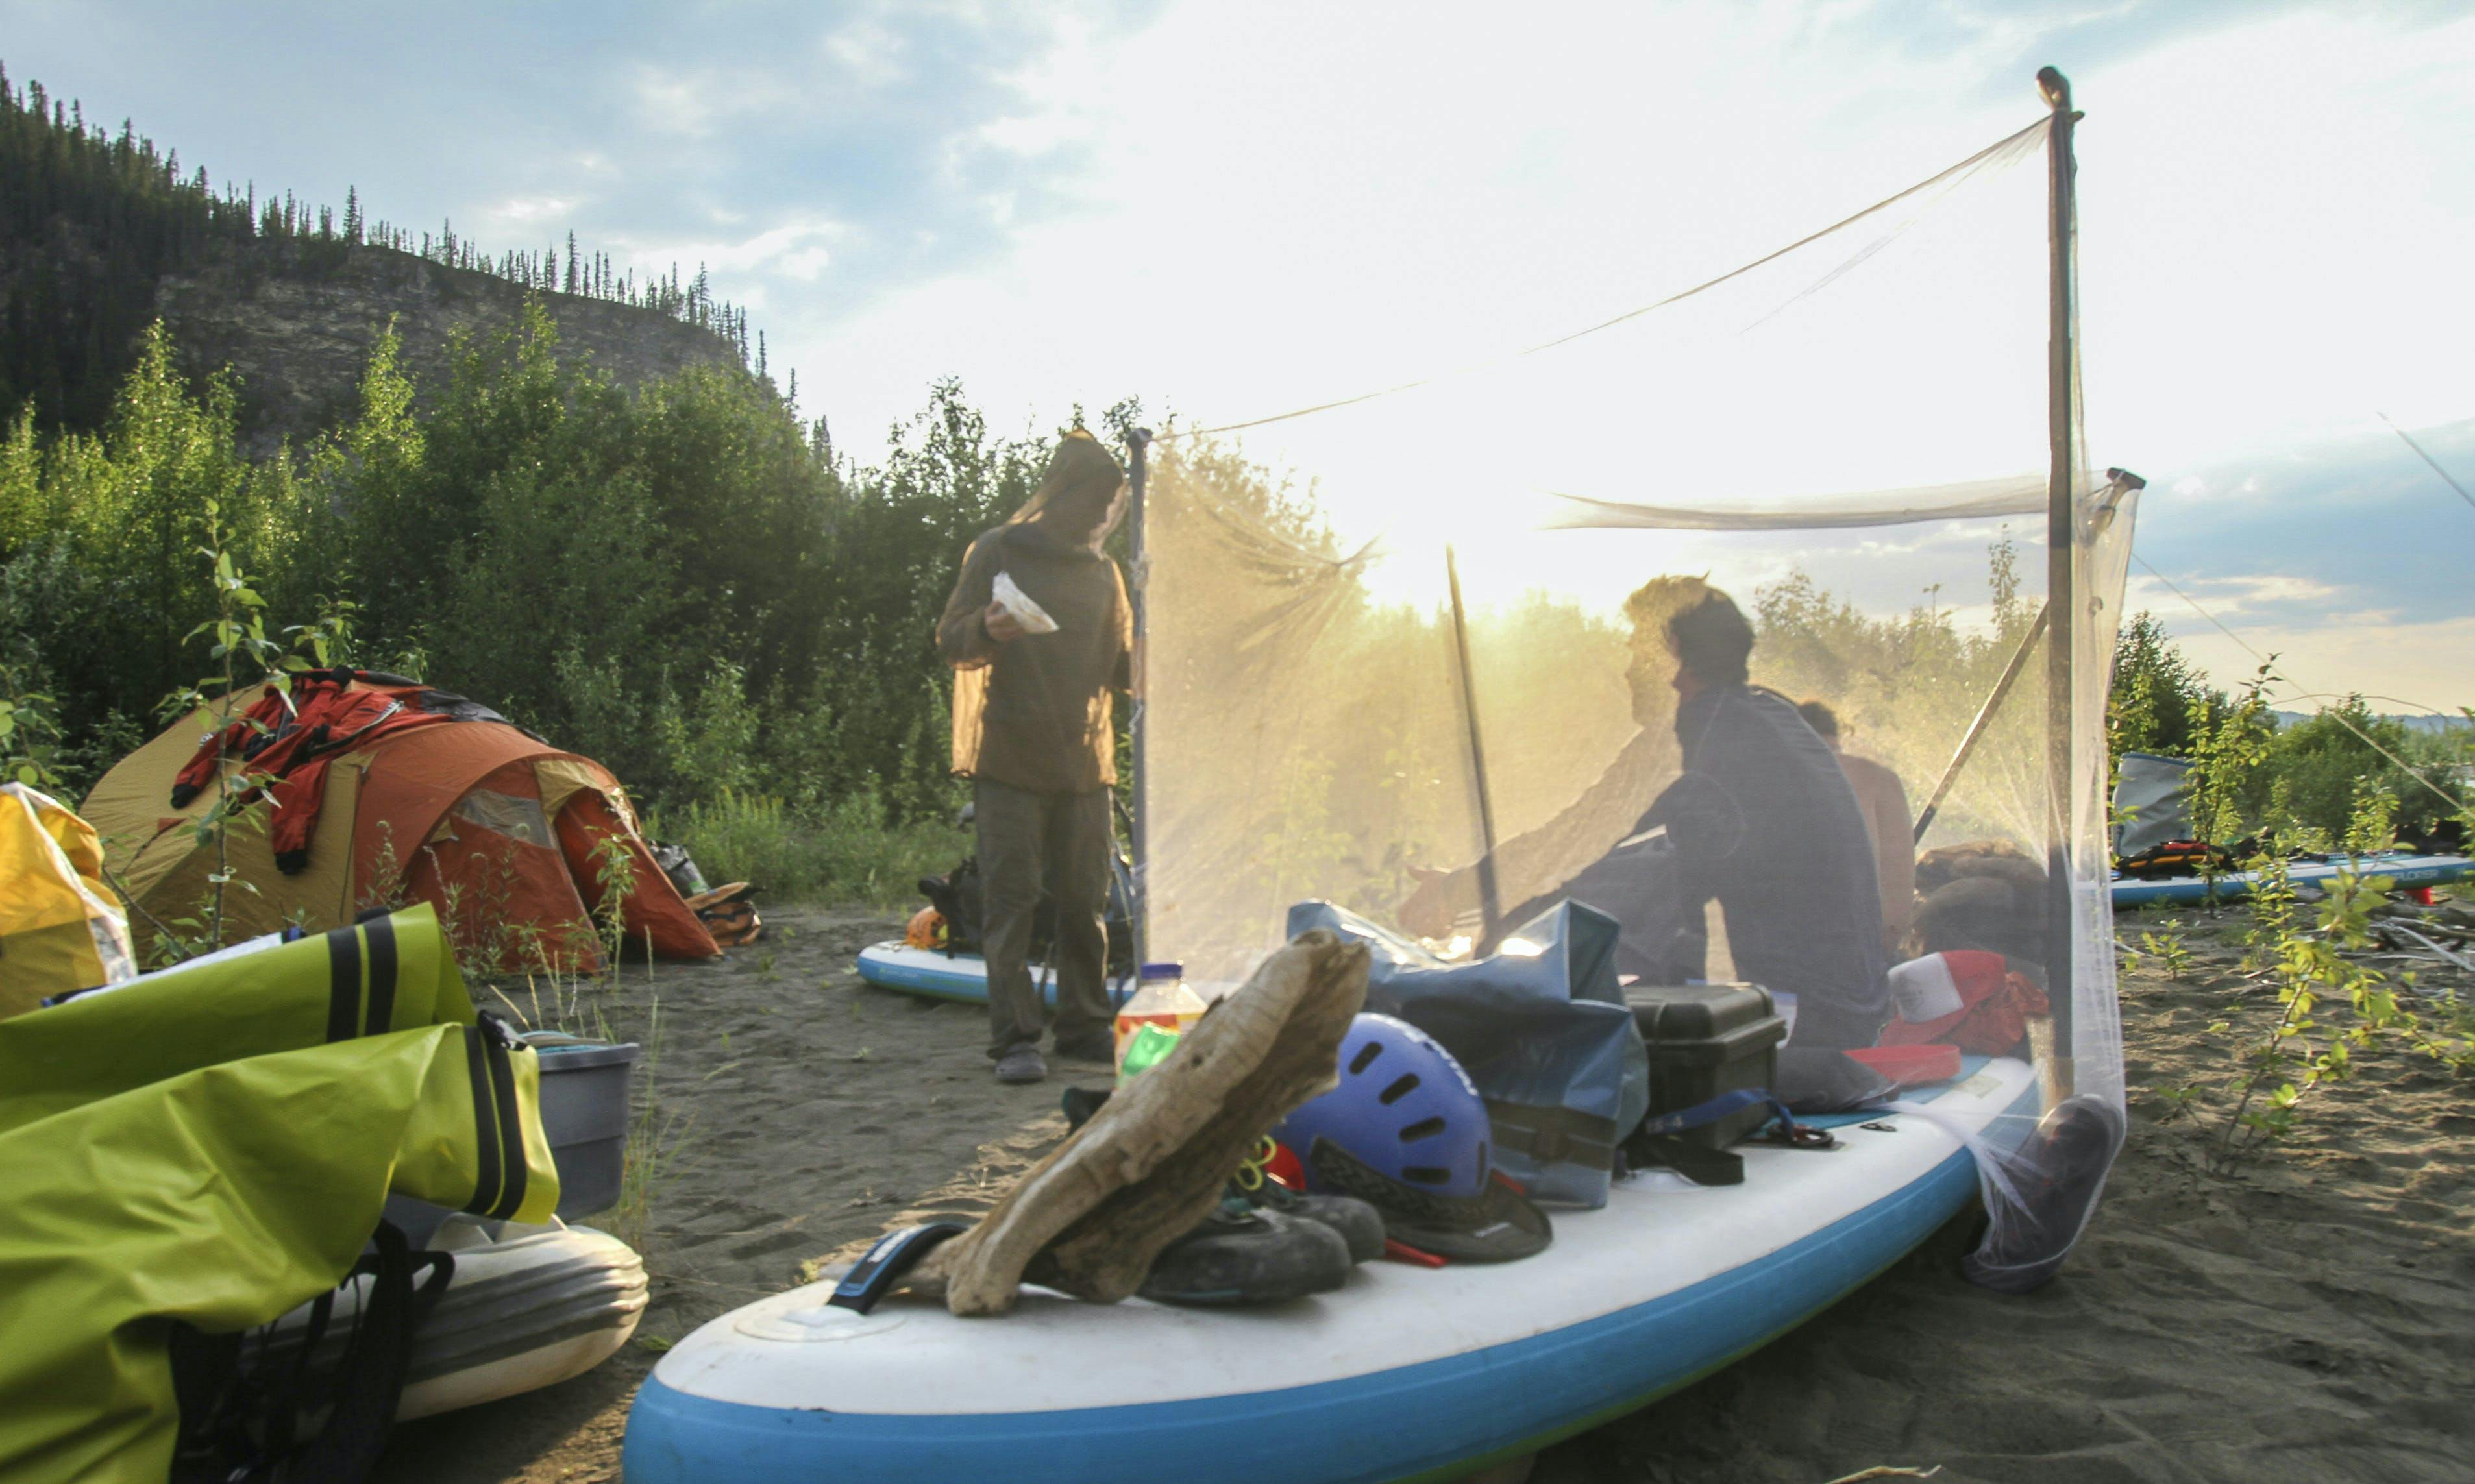 Les vêtements et abris antimoustiques ont été mis à l’épreuve lors de cette expédition de surf à pagaie soutenue par MEC. Photo : Todd Lawson